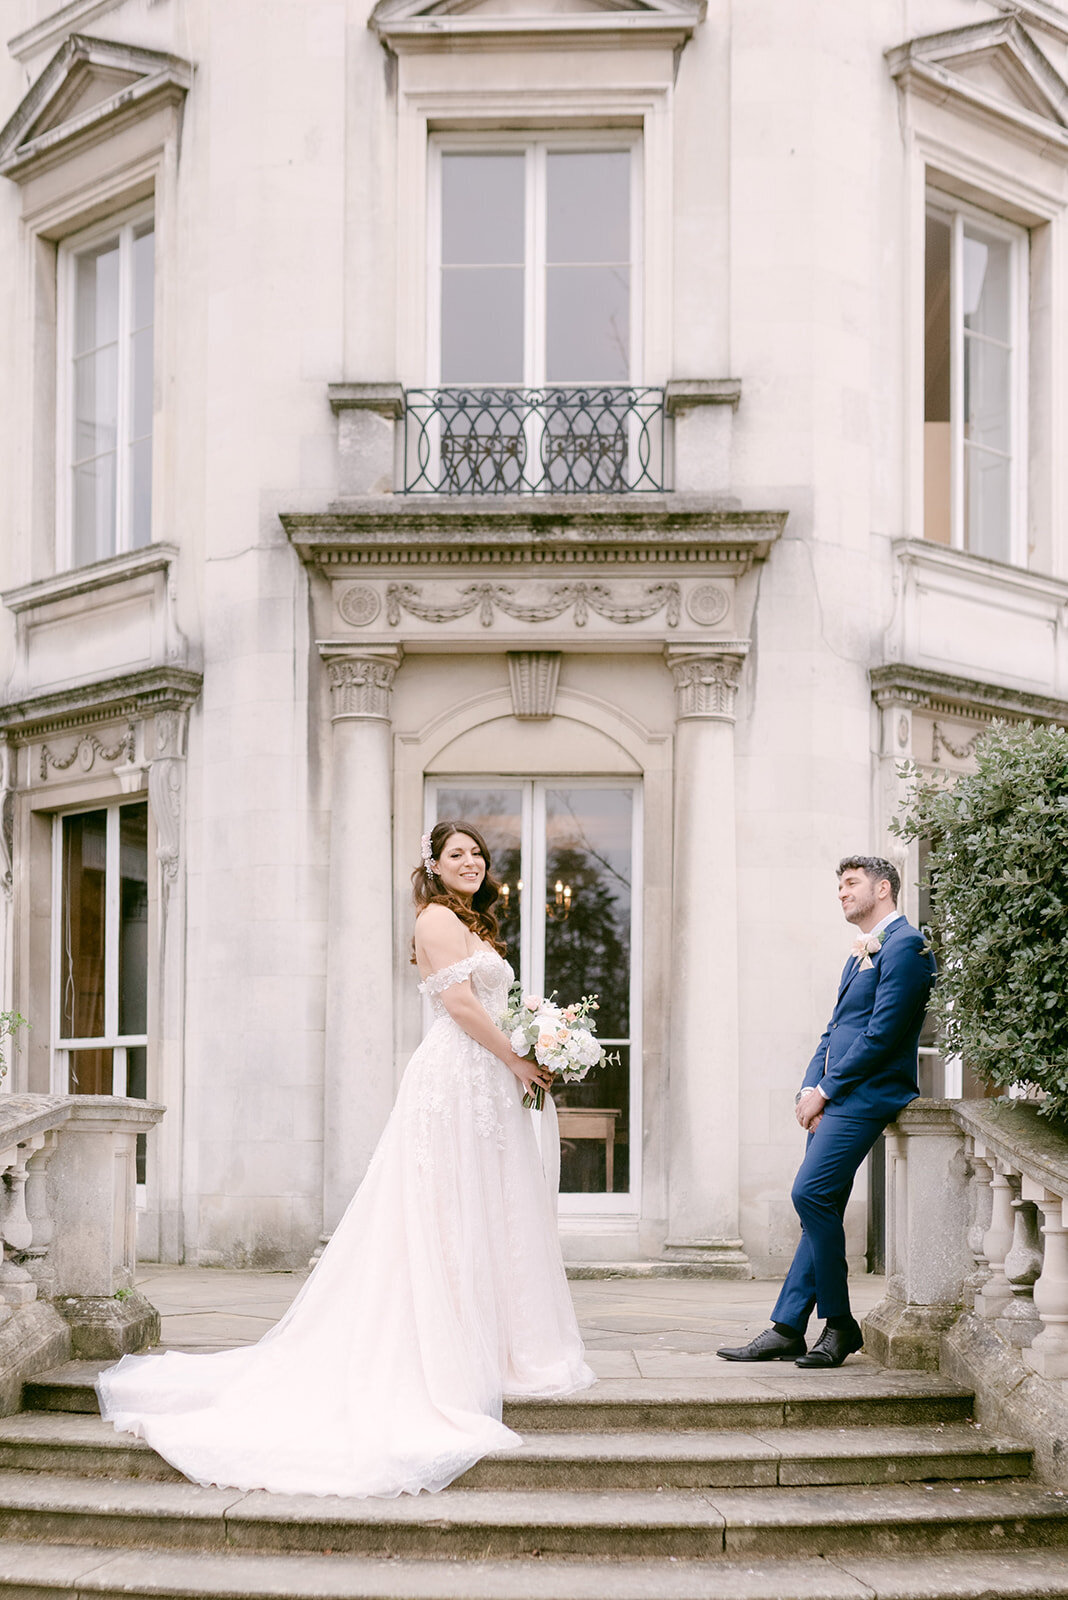 Luxury wedding photographer london